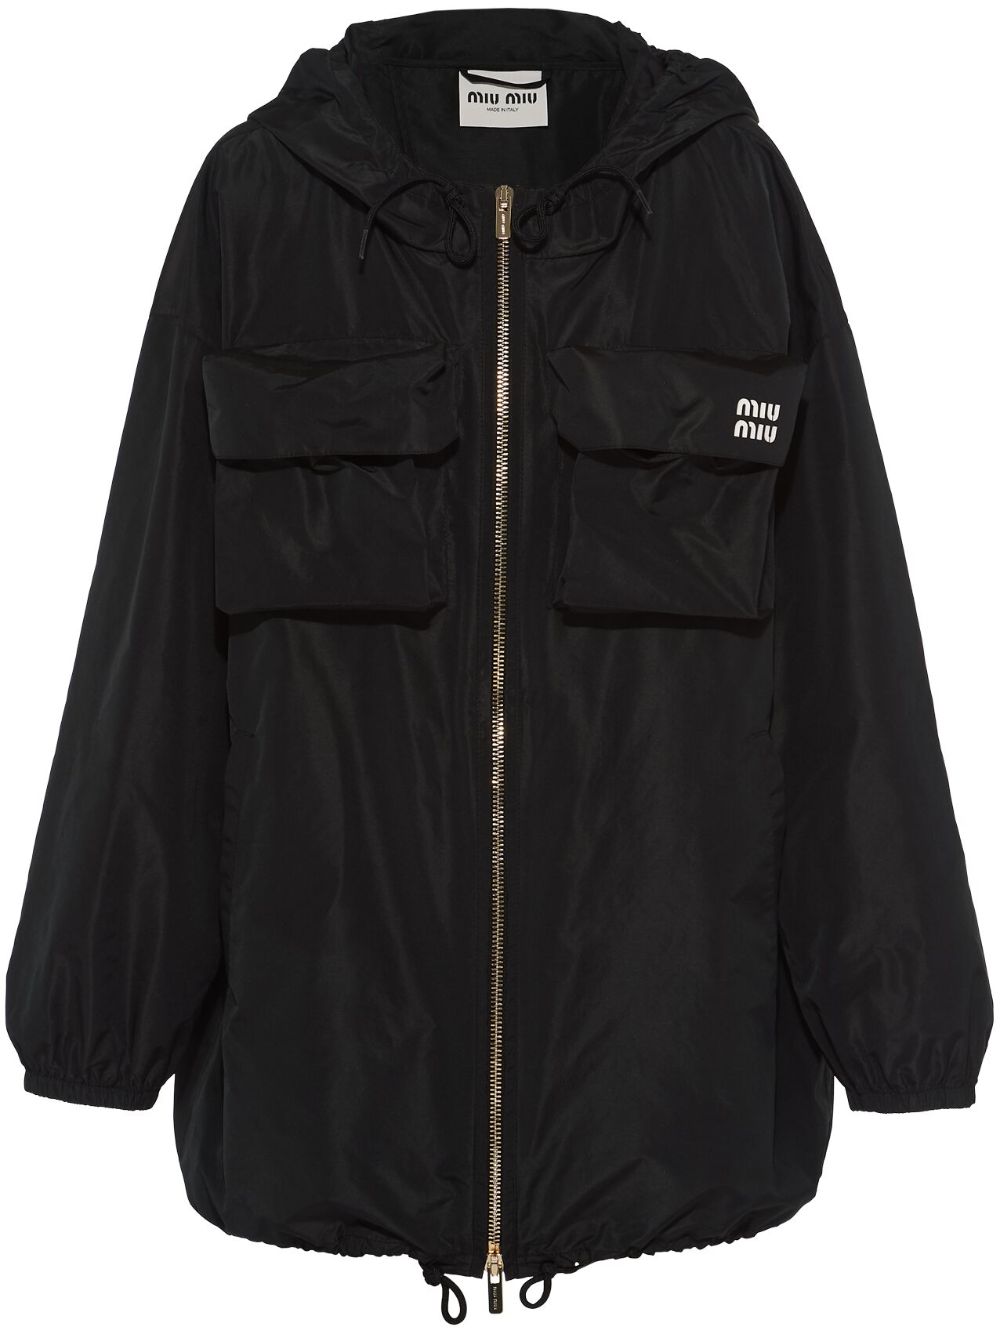 cargo-pocket zip-up coat